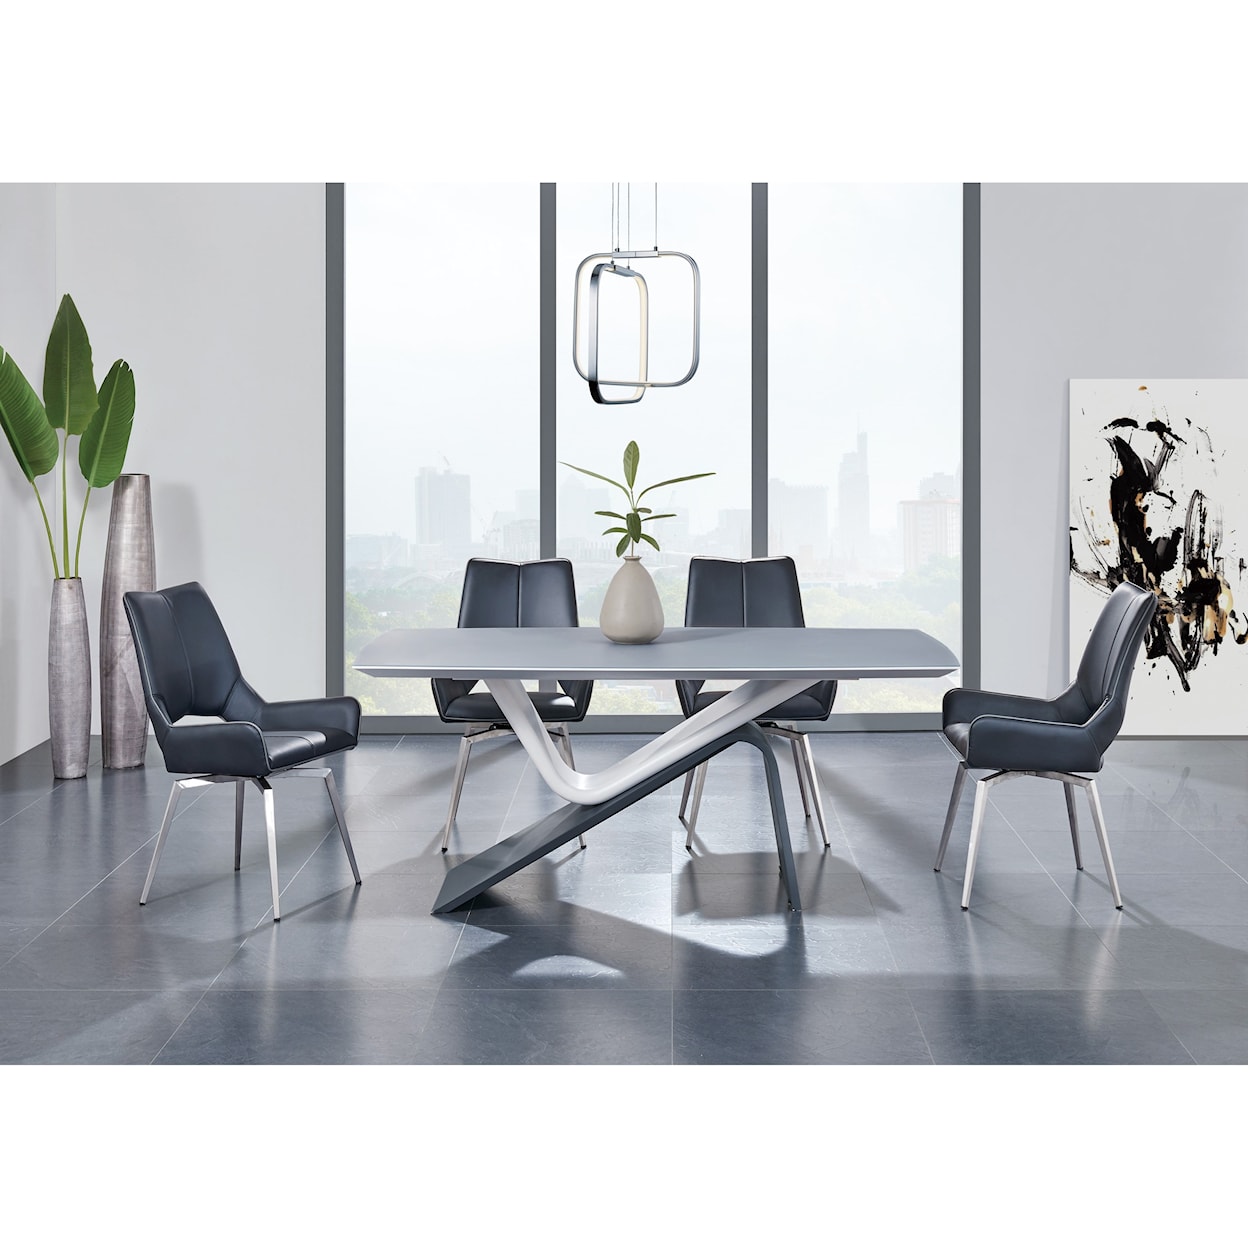 Global Furniture D4878 Swivel Side Chair